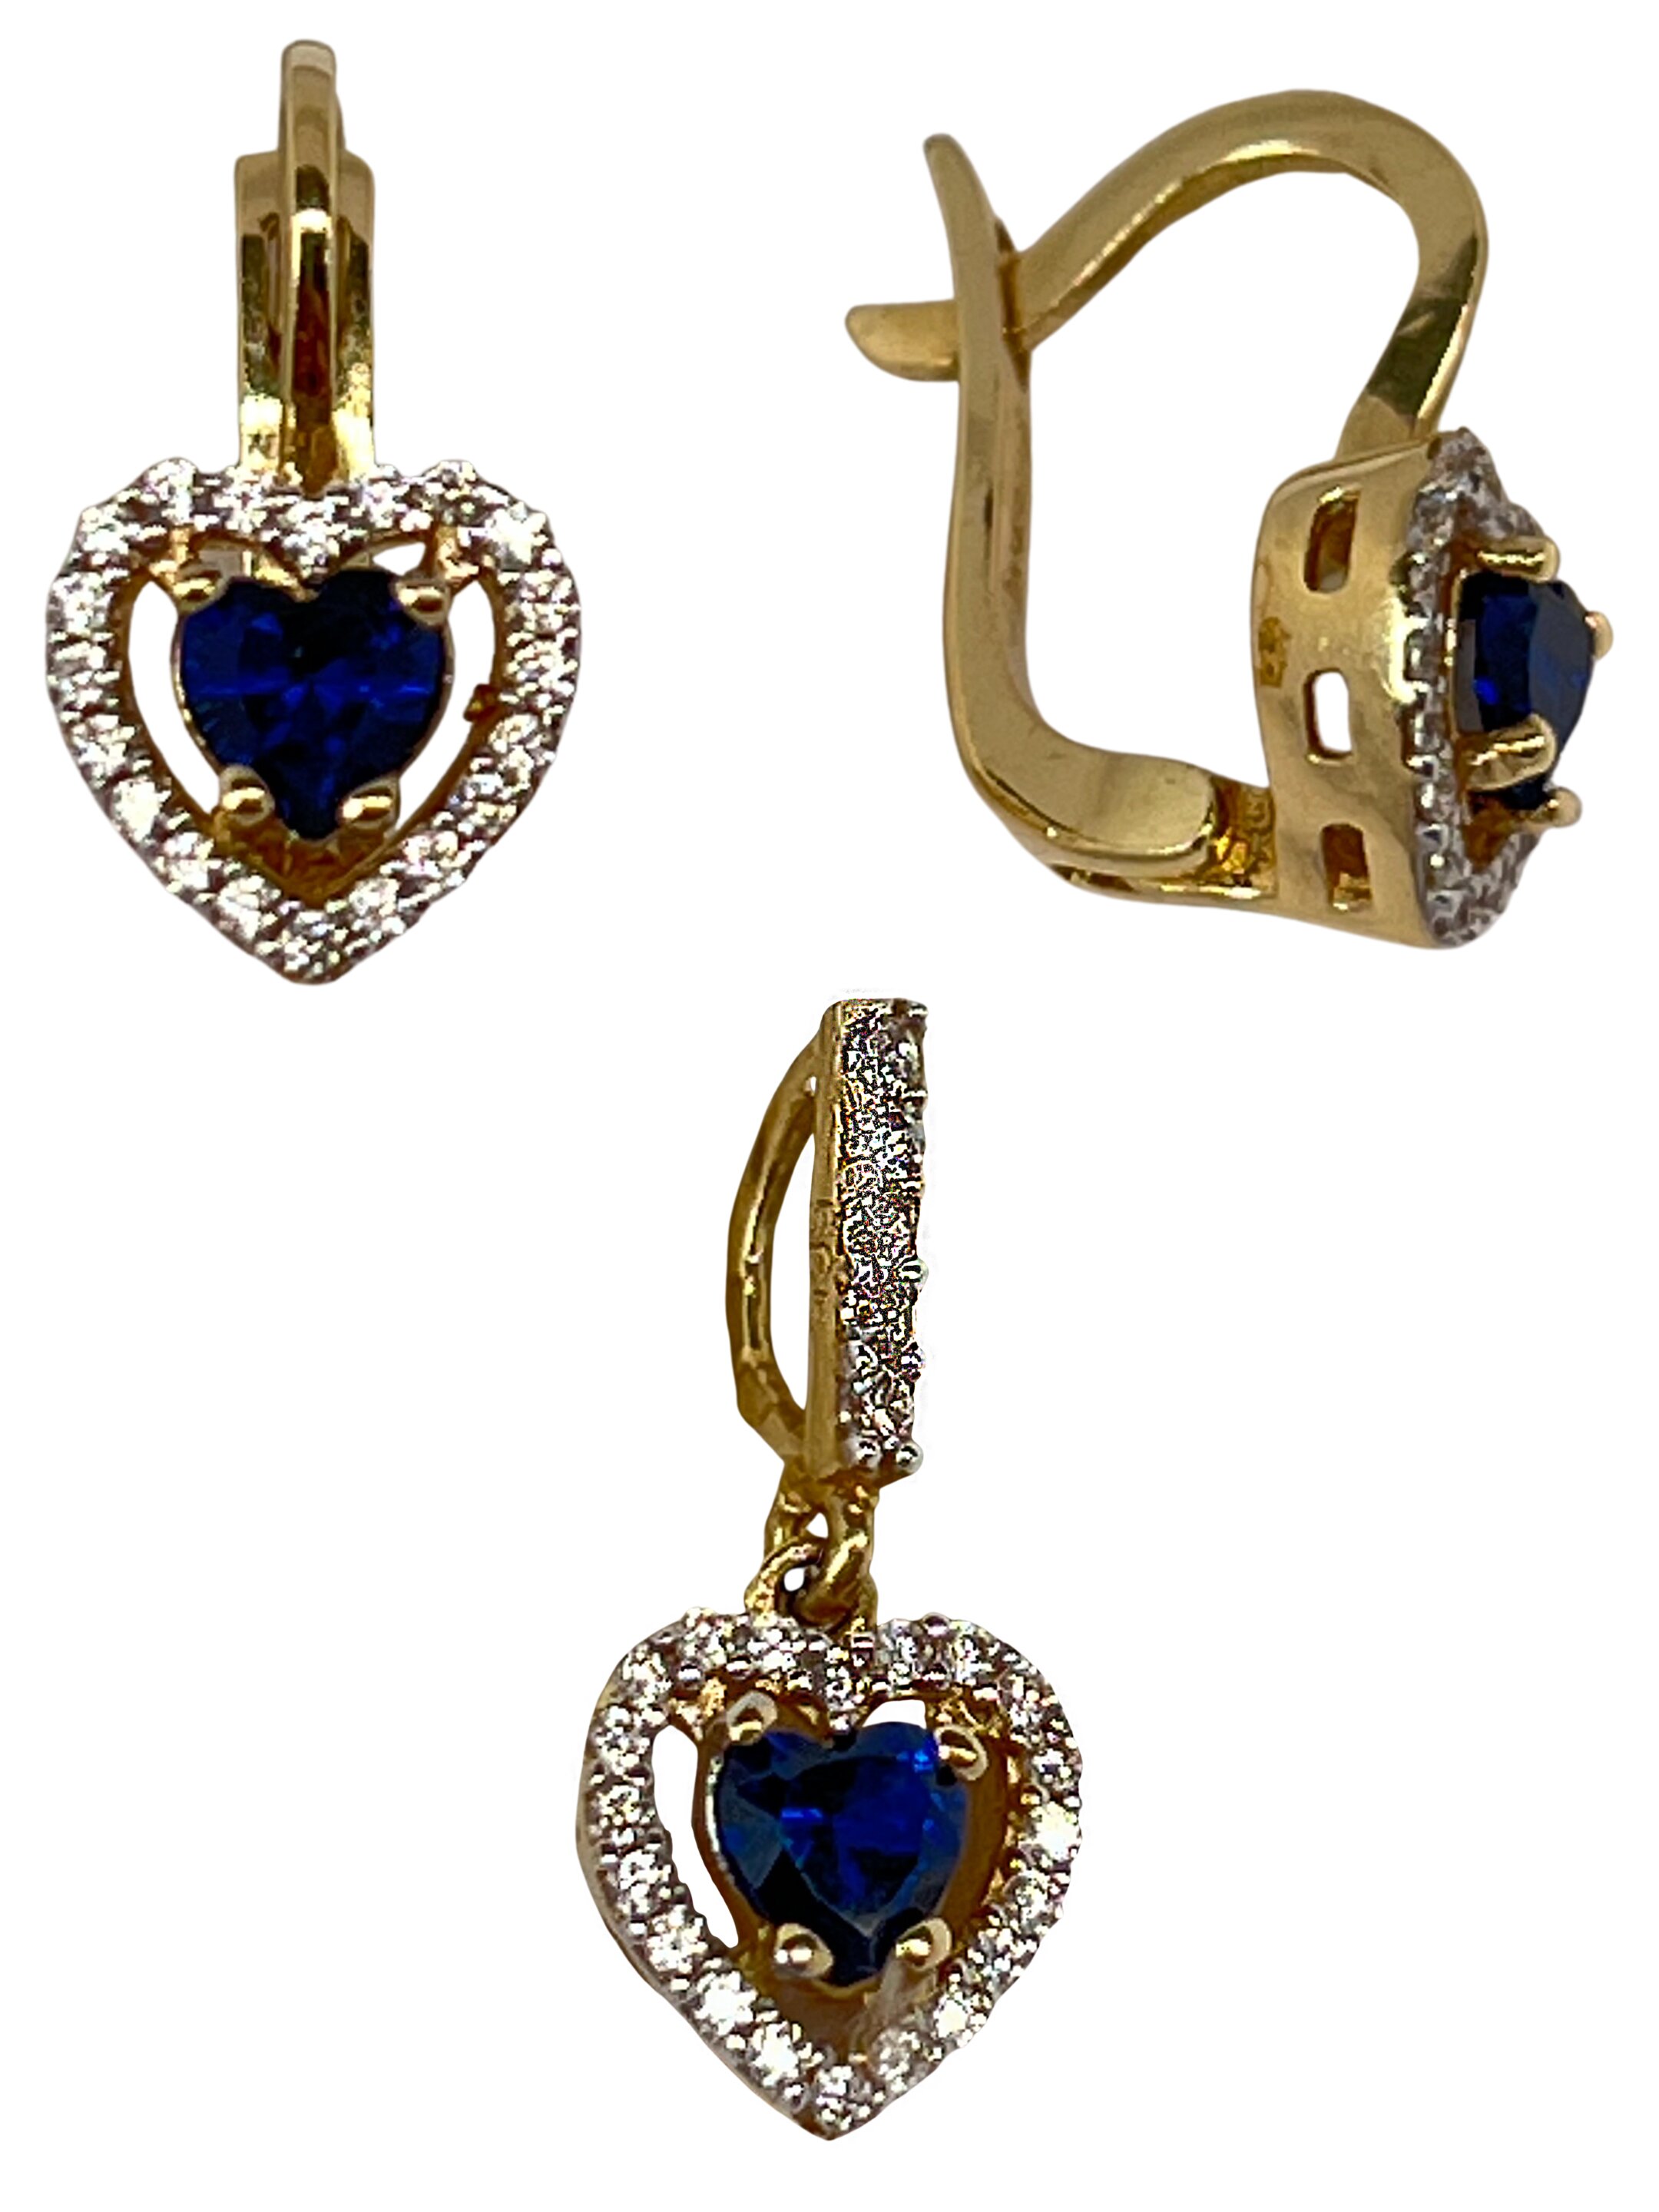 Romantisk guld prydet med blå zirkoner Romance III.